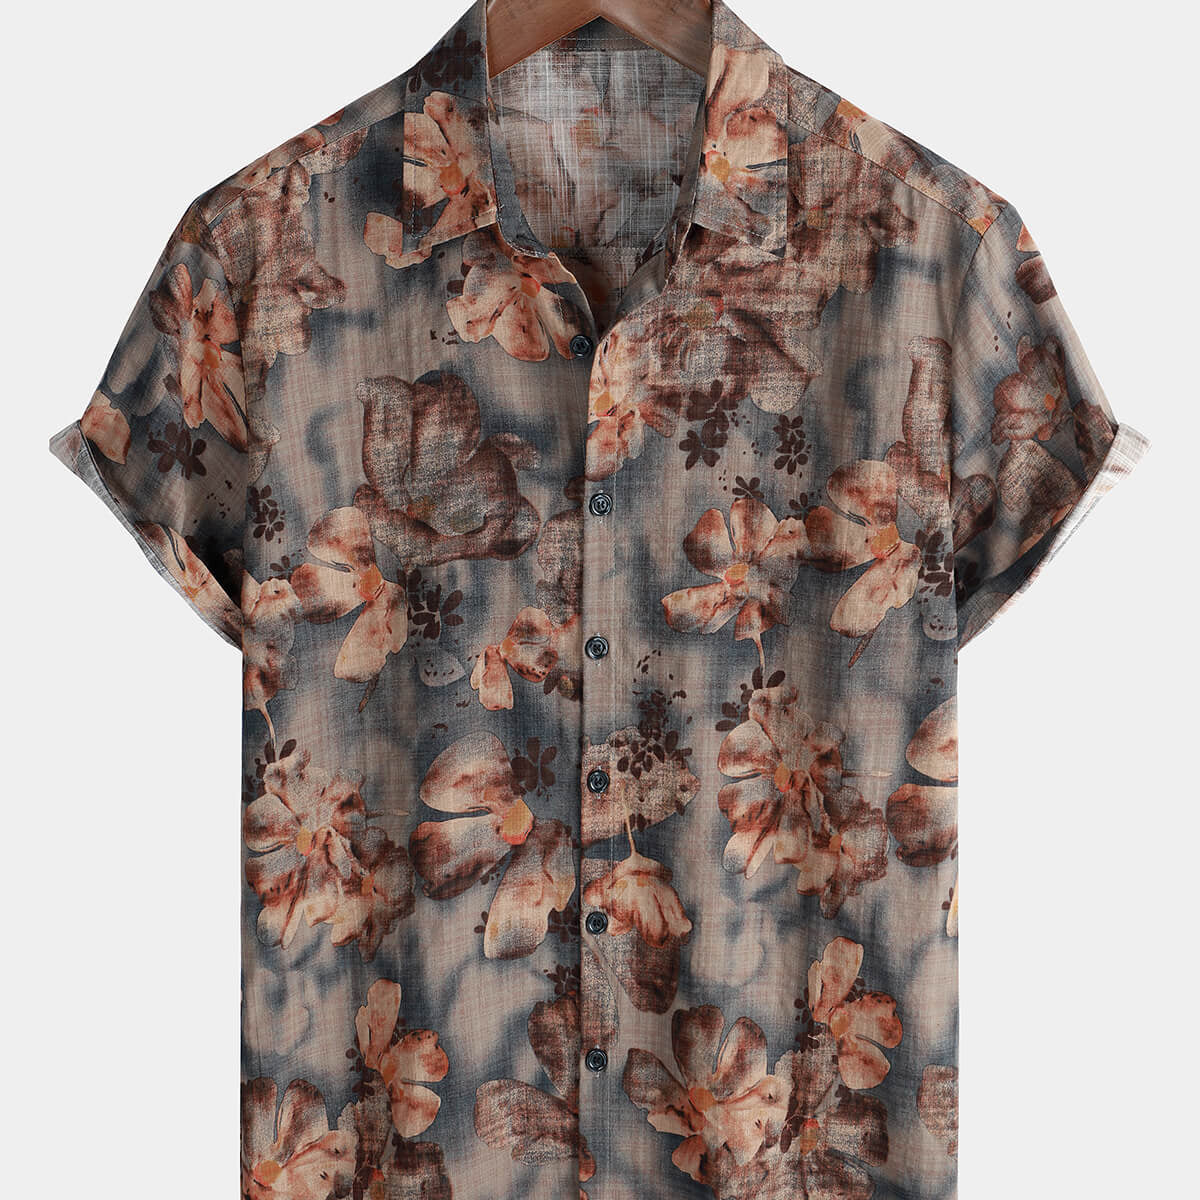 Men's Short Sleeve Retro Button Casual Cotton Beach Shirt